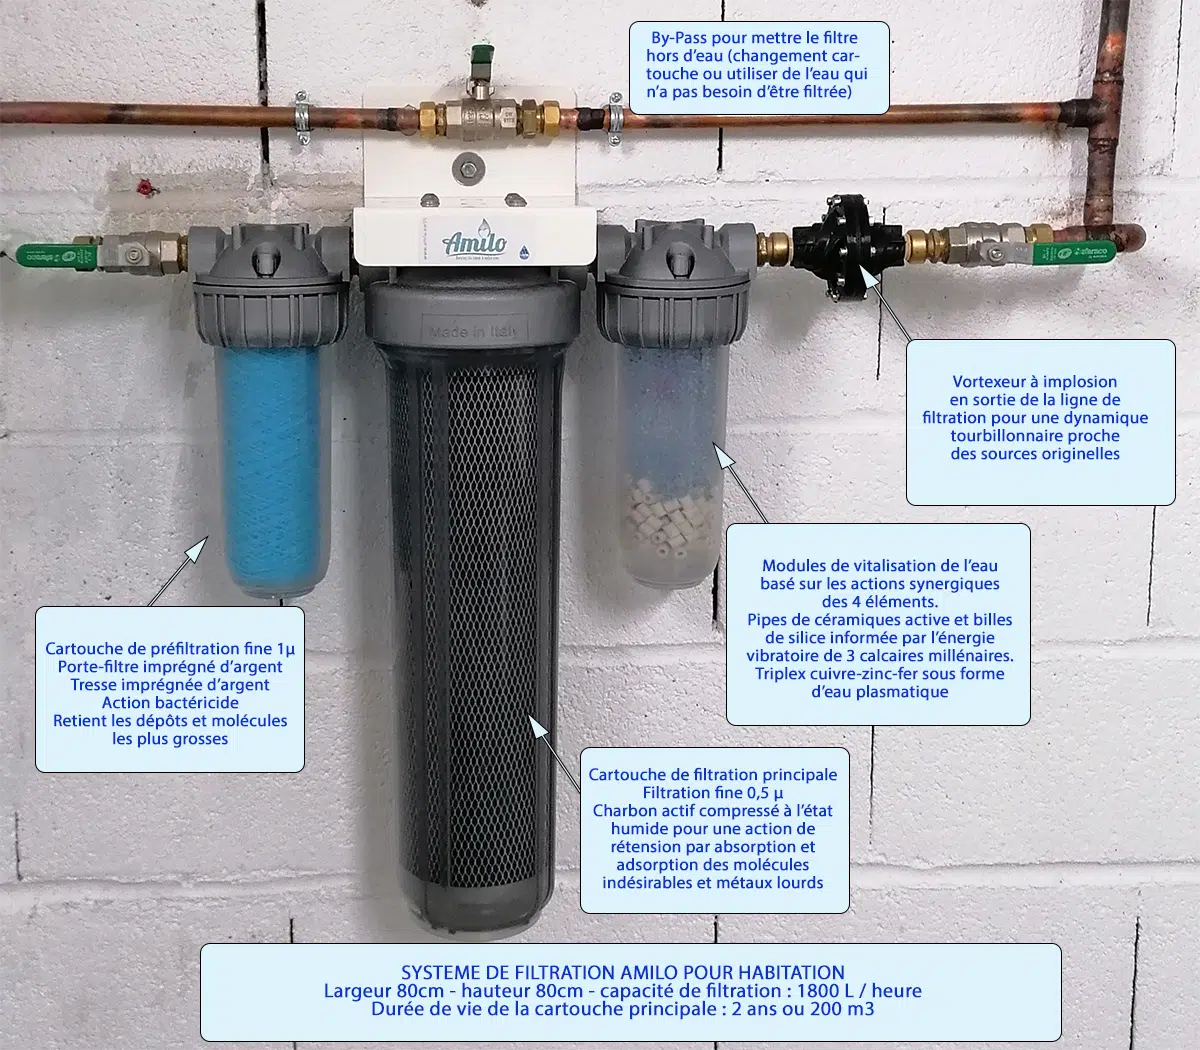 Les 3 types de filtration de l'eau disponibles ! — Expertise